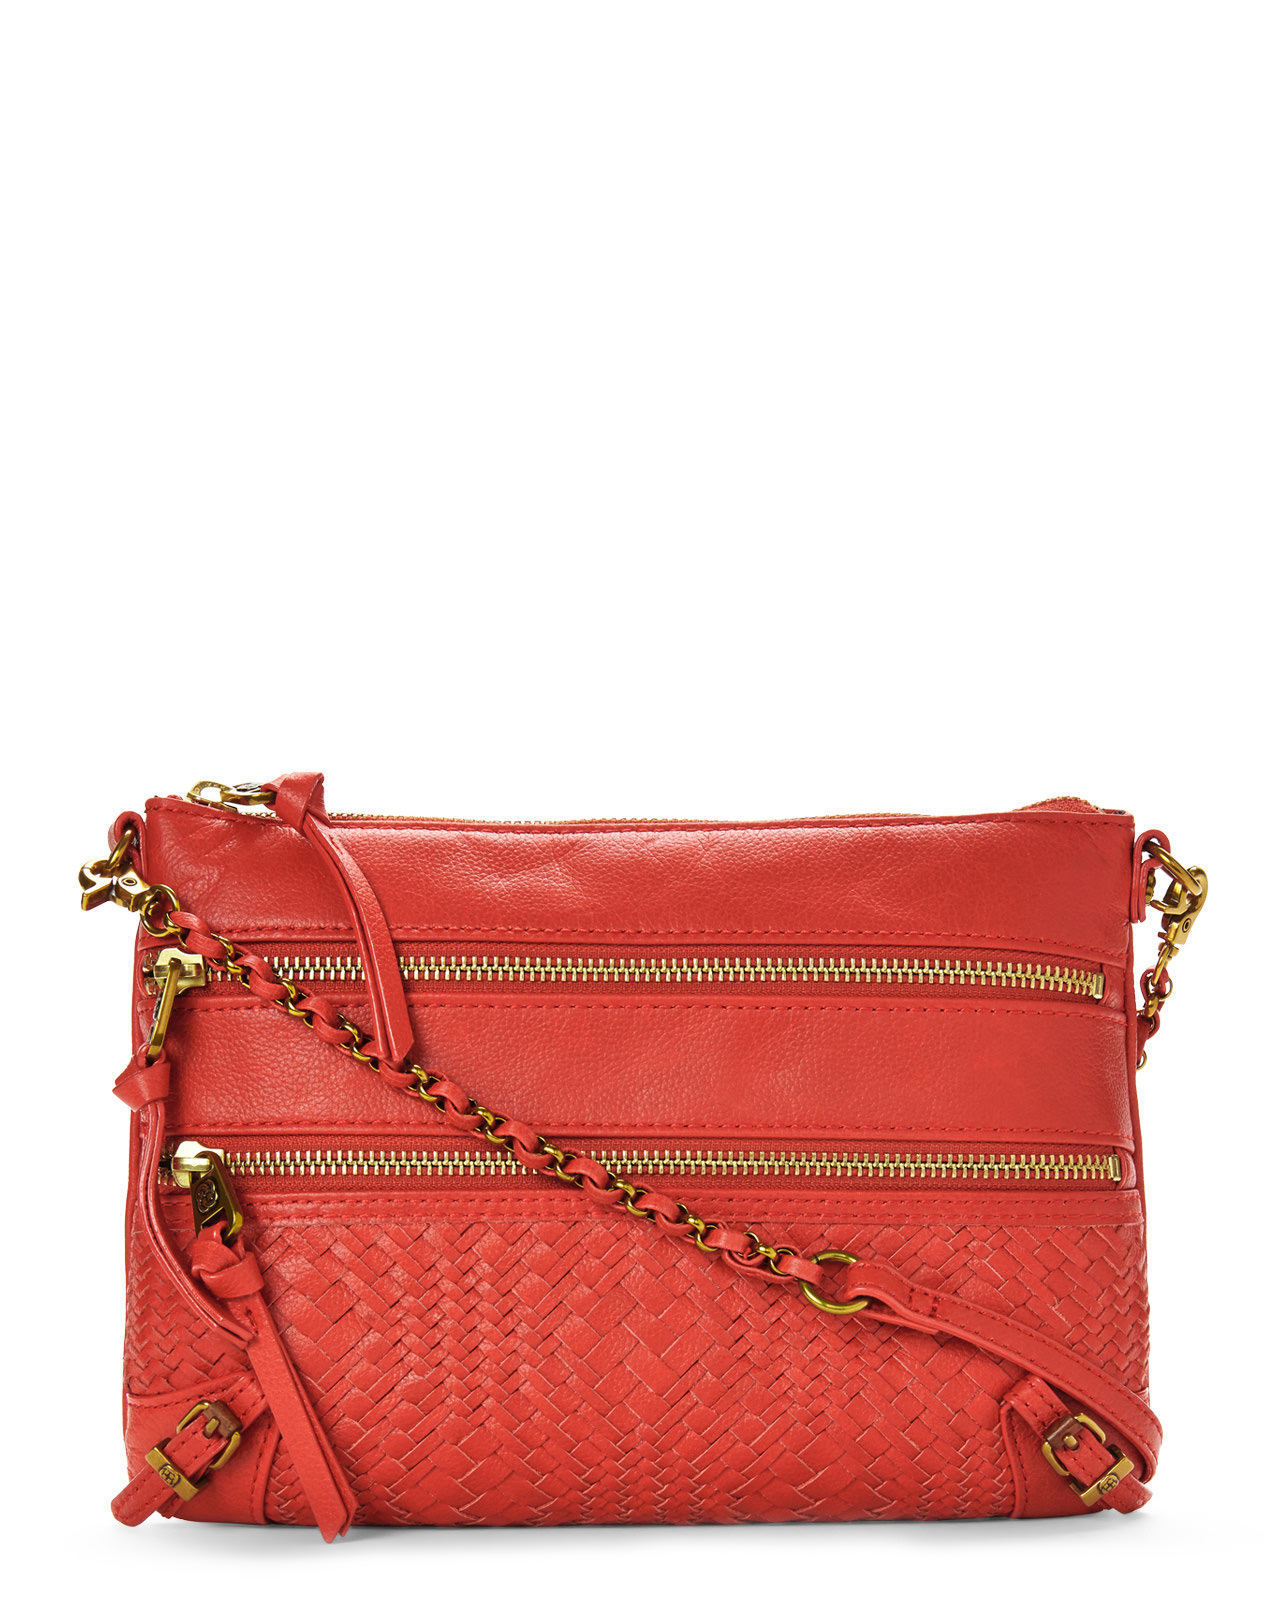 Lyst - Elliott lucca Red Bali 89 Handbag in Red